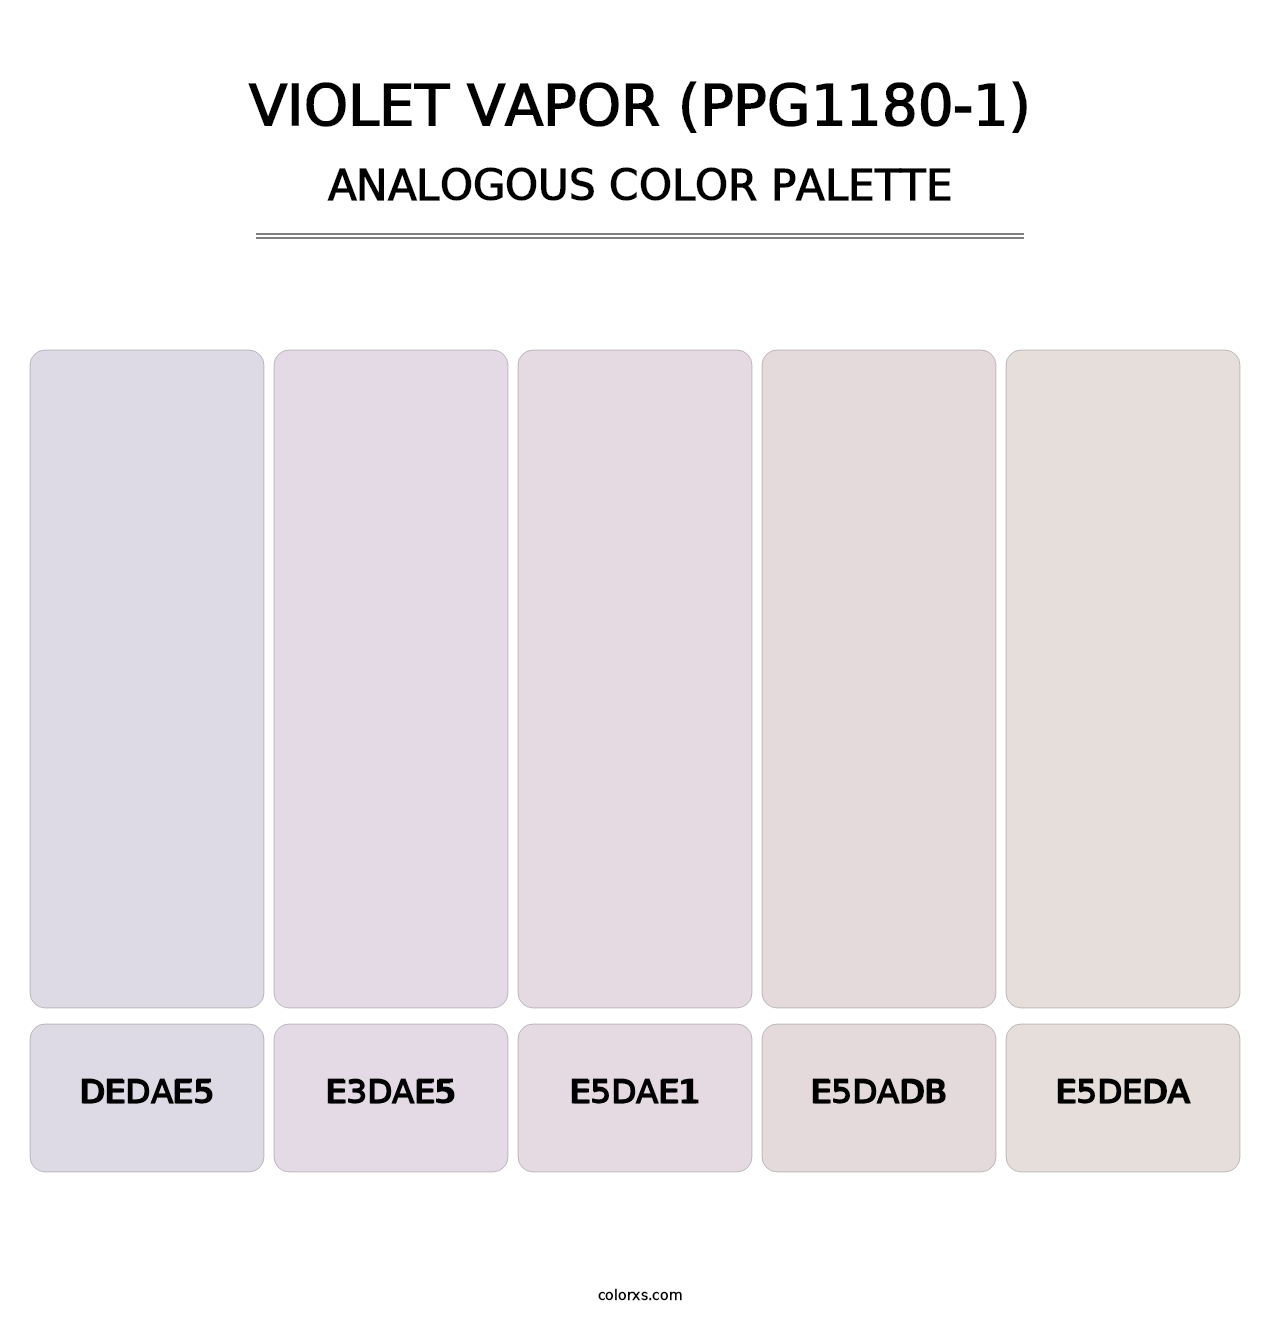 Violet Vapor (PPG1180-1) - Analogous Color Palette